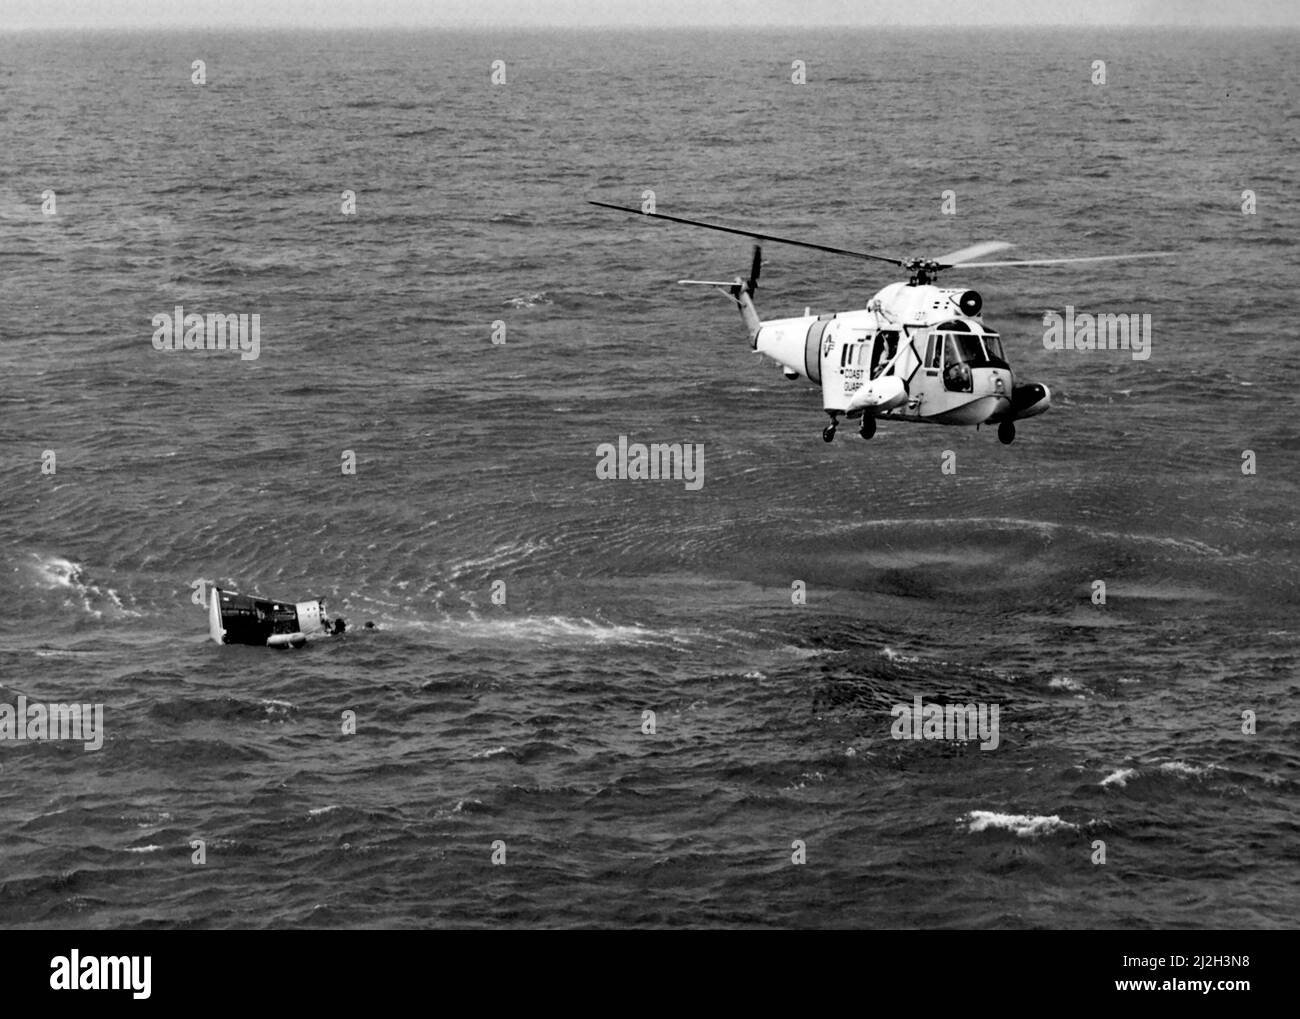 Un hélicoptère Seaguard HH-52A Sikorsky HH-1965 de la Garde côtière américaine survolé la capsule spatiale Gemini 3 par les astronautes Gus Grissom et John Young après son éclatement dans l'océan Atlantique, le 23 mars. Le porte-avions USS Intrepid (CVS-11) a récupéré l'embarcation et l'équipage. Banque D'Images